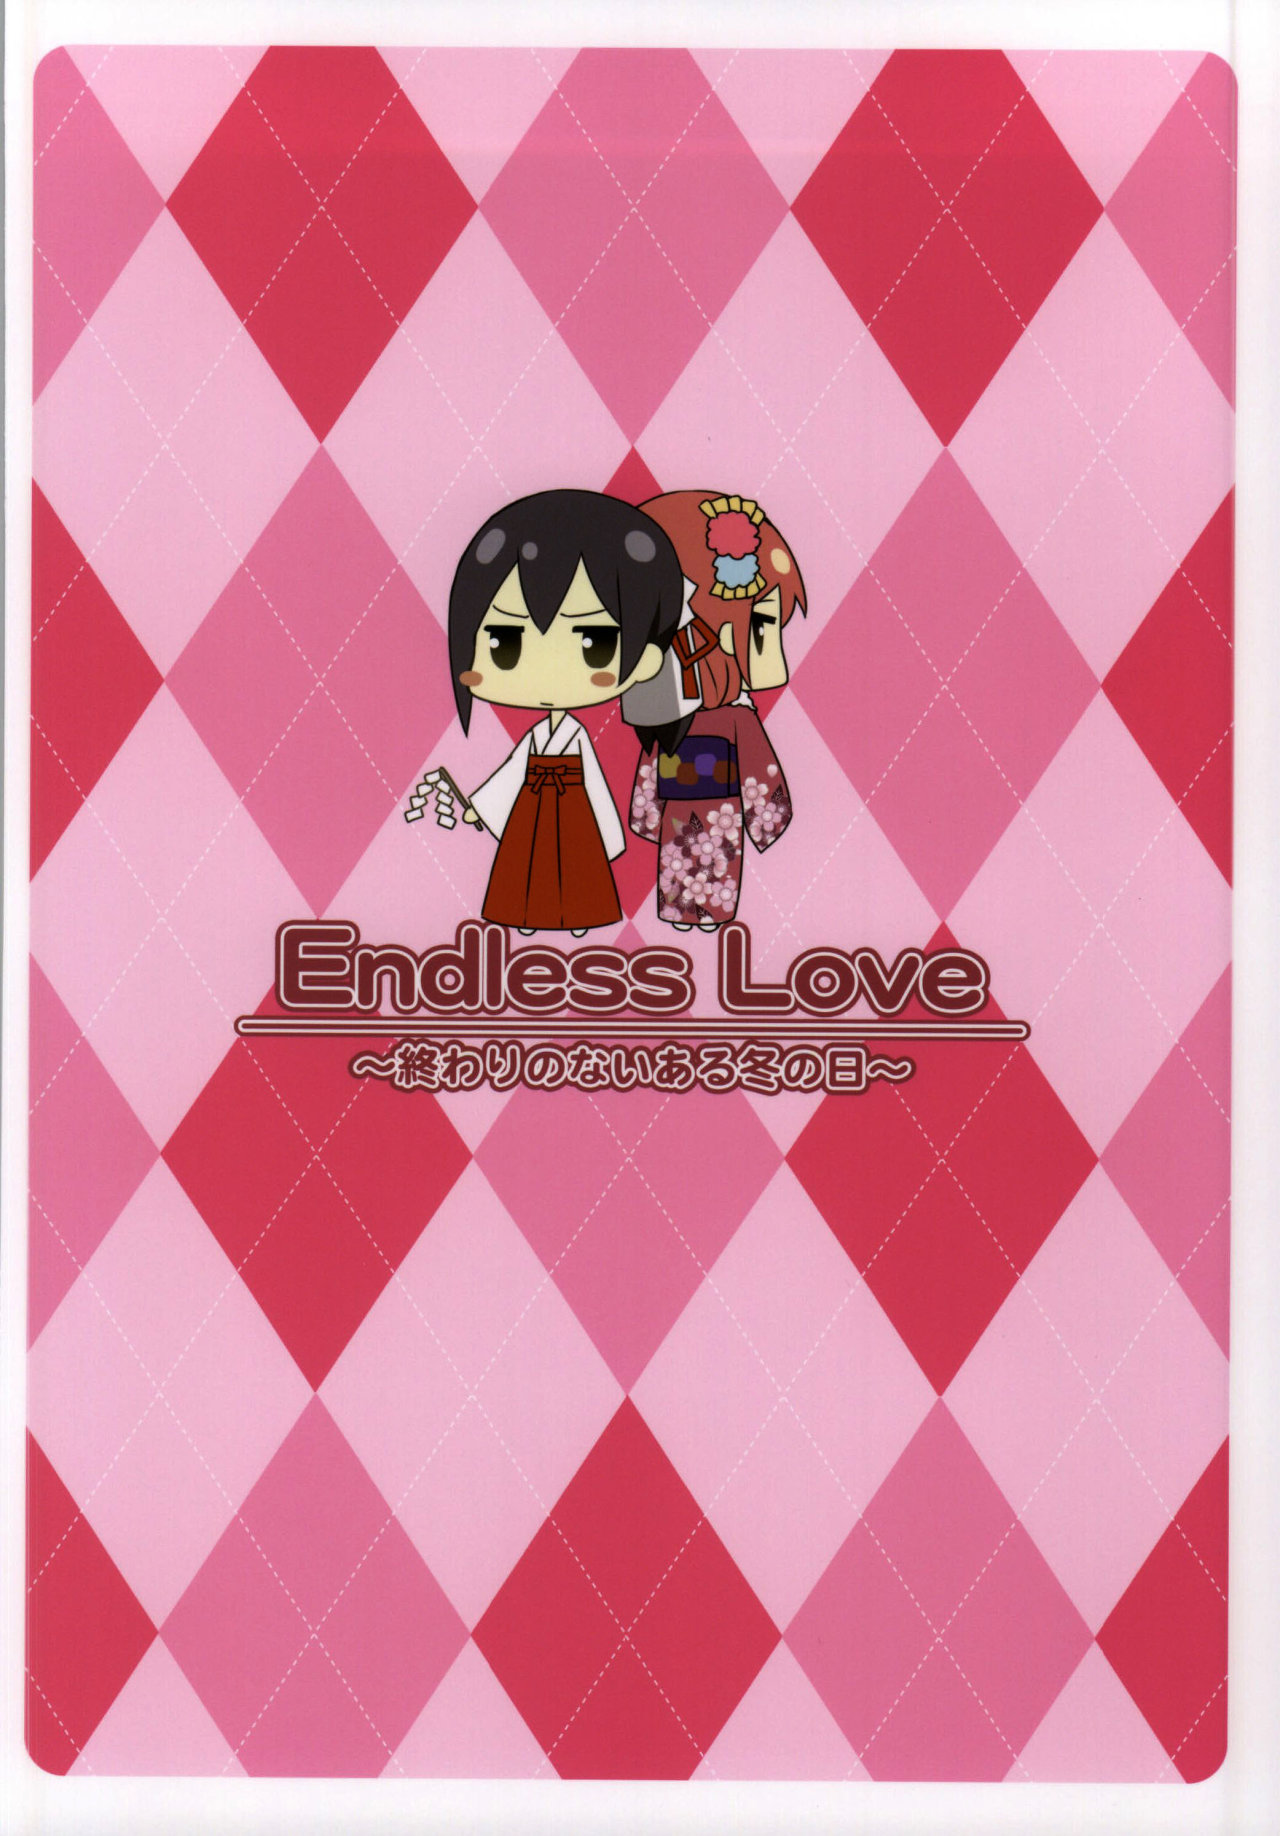 endles love - 17